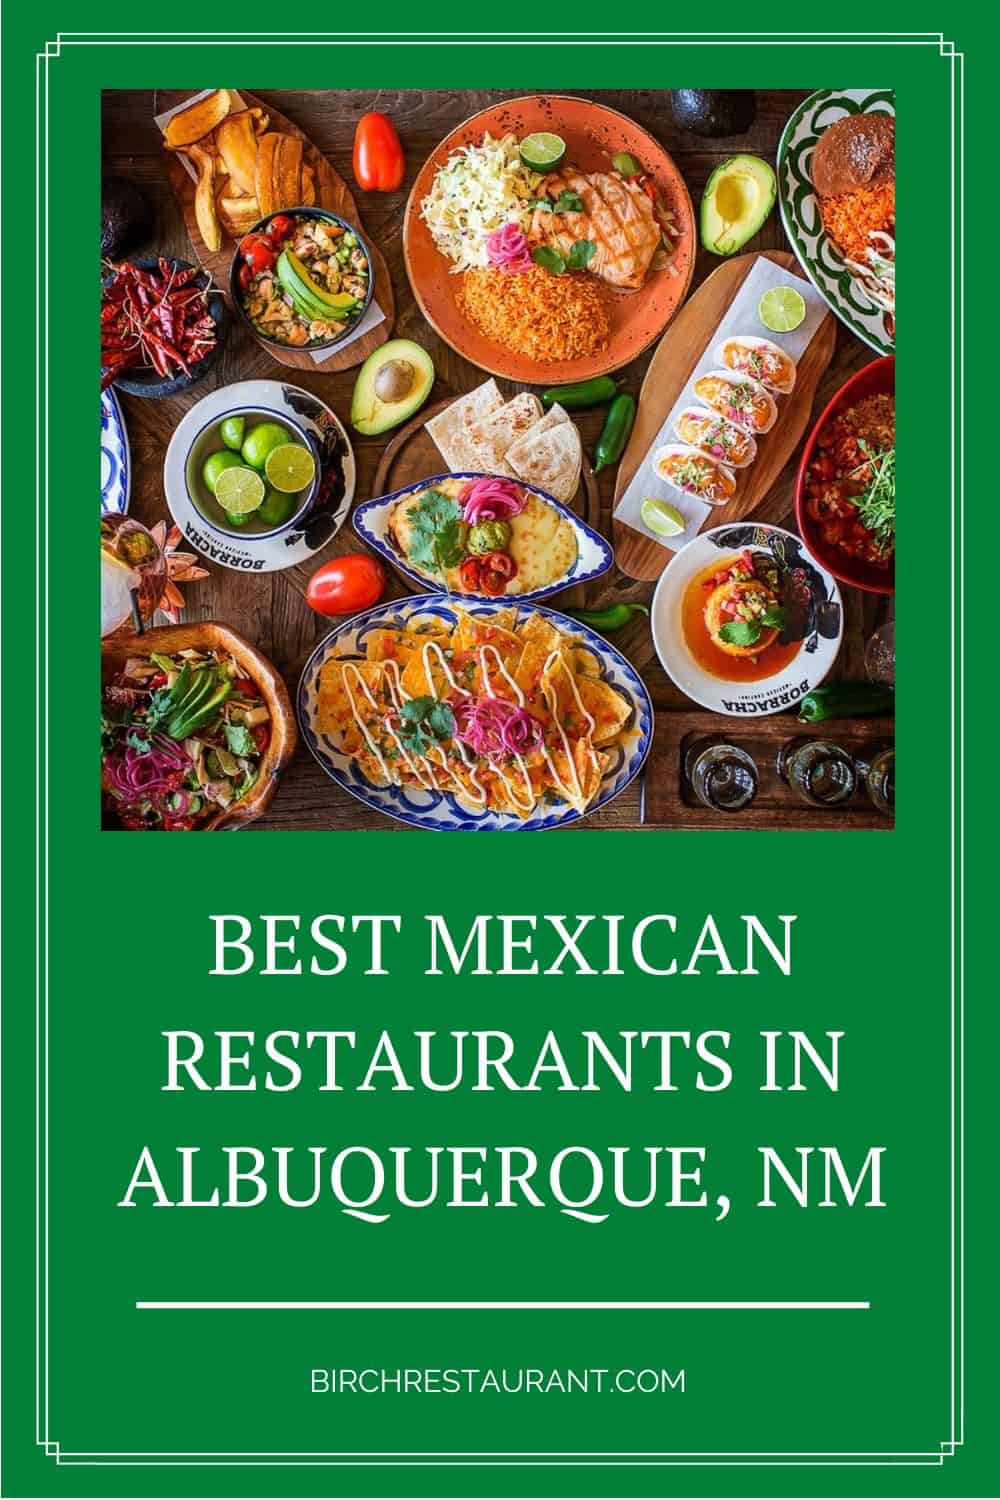 Best Mexican Restaurants in Albuquerque